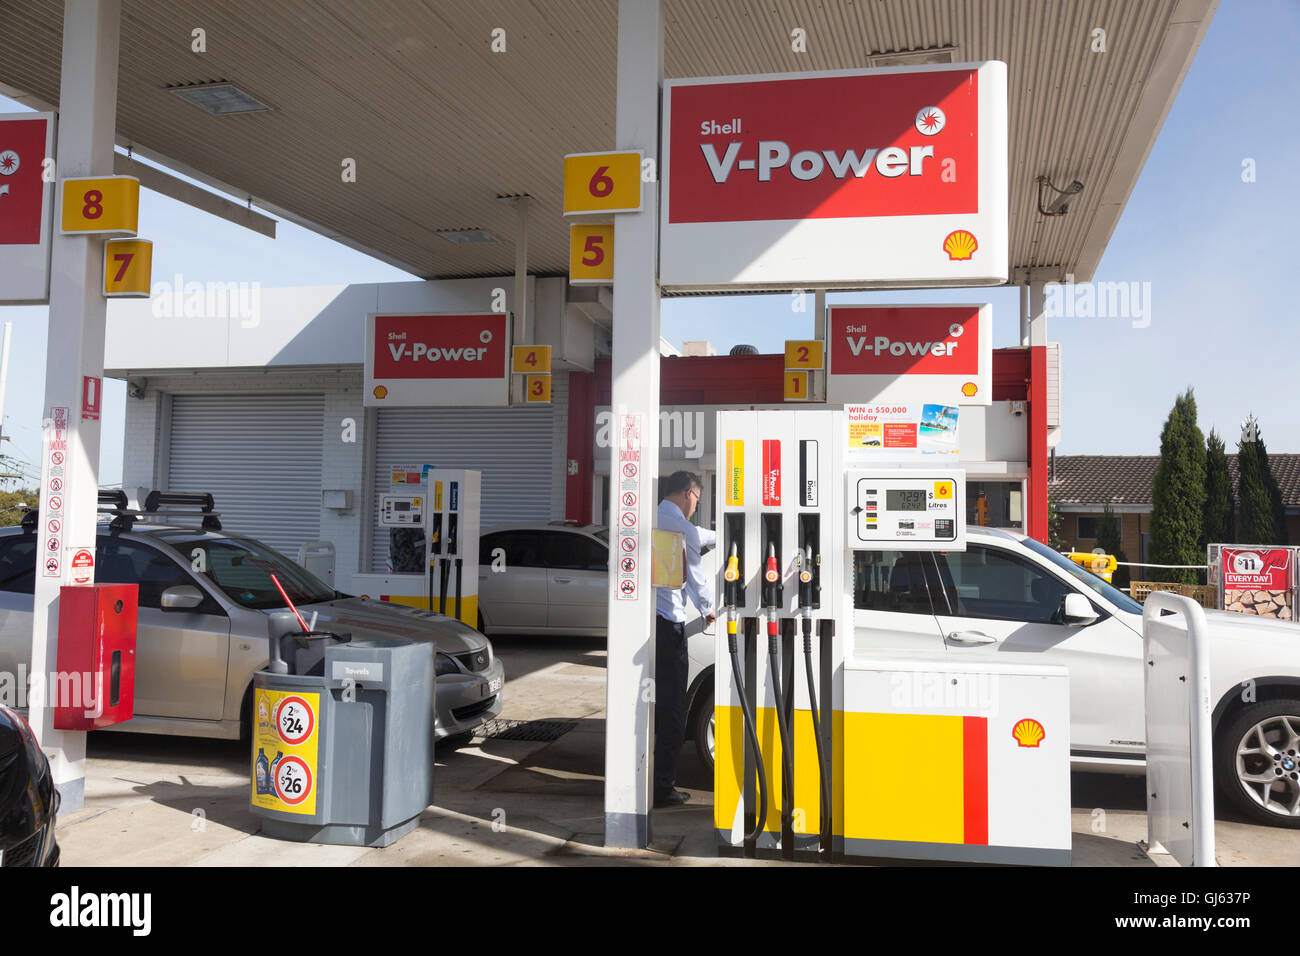 Shell und Coles express Tankstelle auf dem pacific Highway in North Sydney, Australien Stockfoto